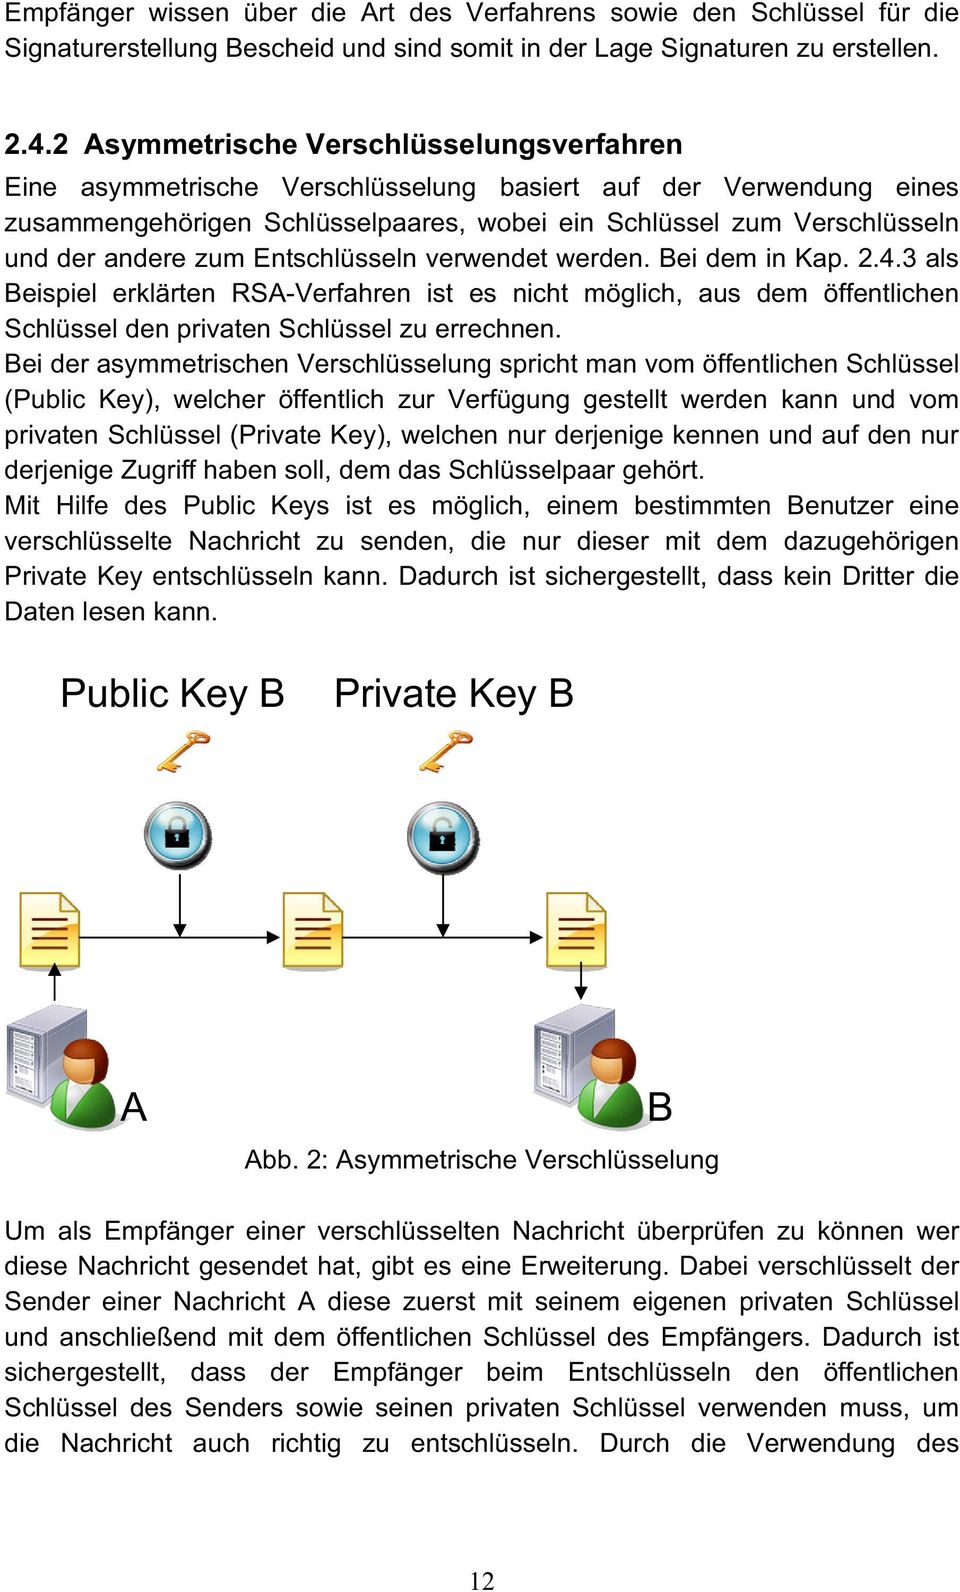 zum Entschlüsseln verwendet werden. Bei dem in Kap. 2.4.3 als Beispiel erklärten RSA-Verfahren ist es nicht möglich, aus dem öffentlichen Schlüssel den privaten Schlüssel zu errechnen.